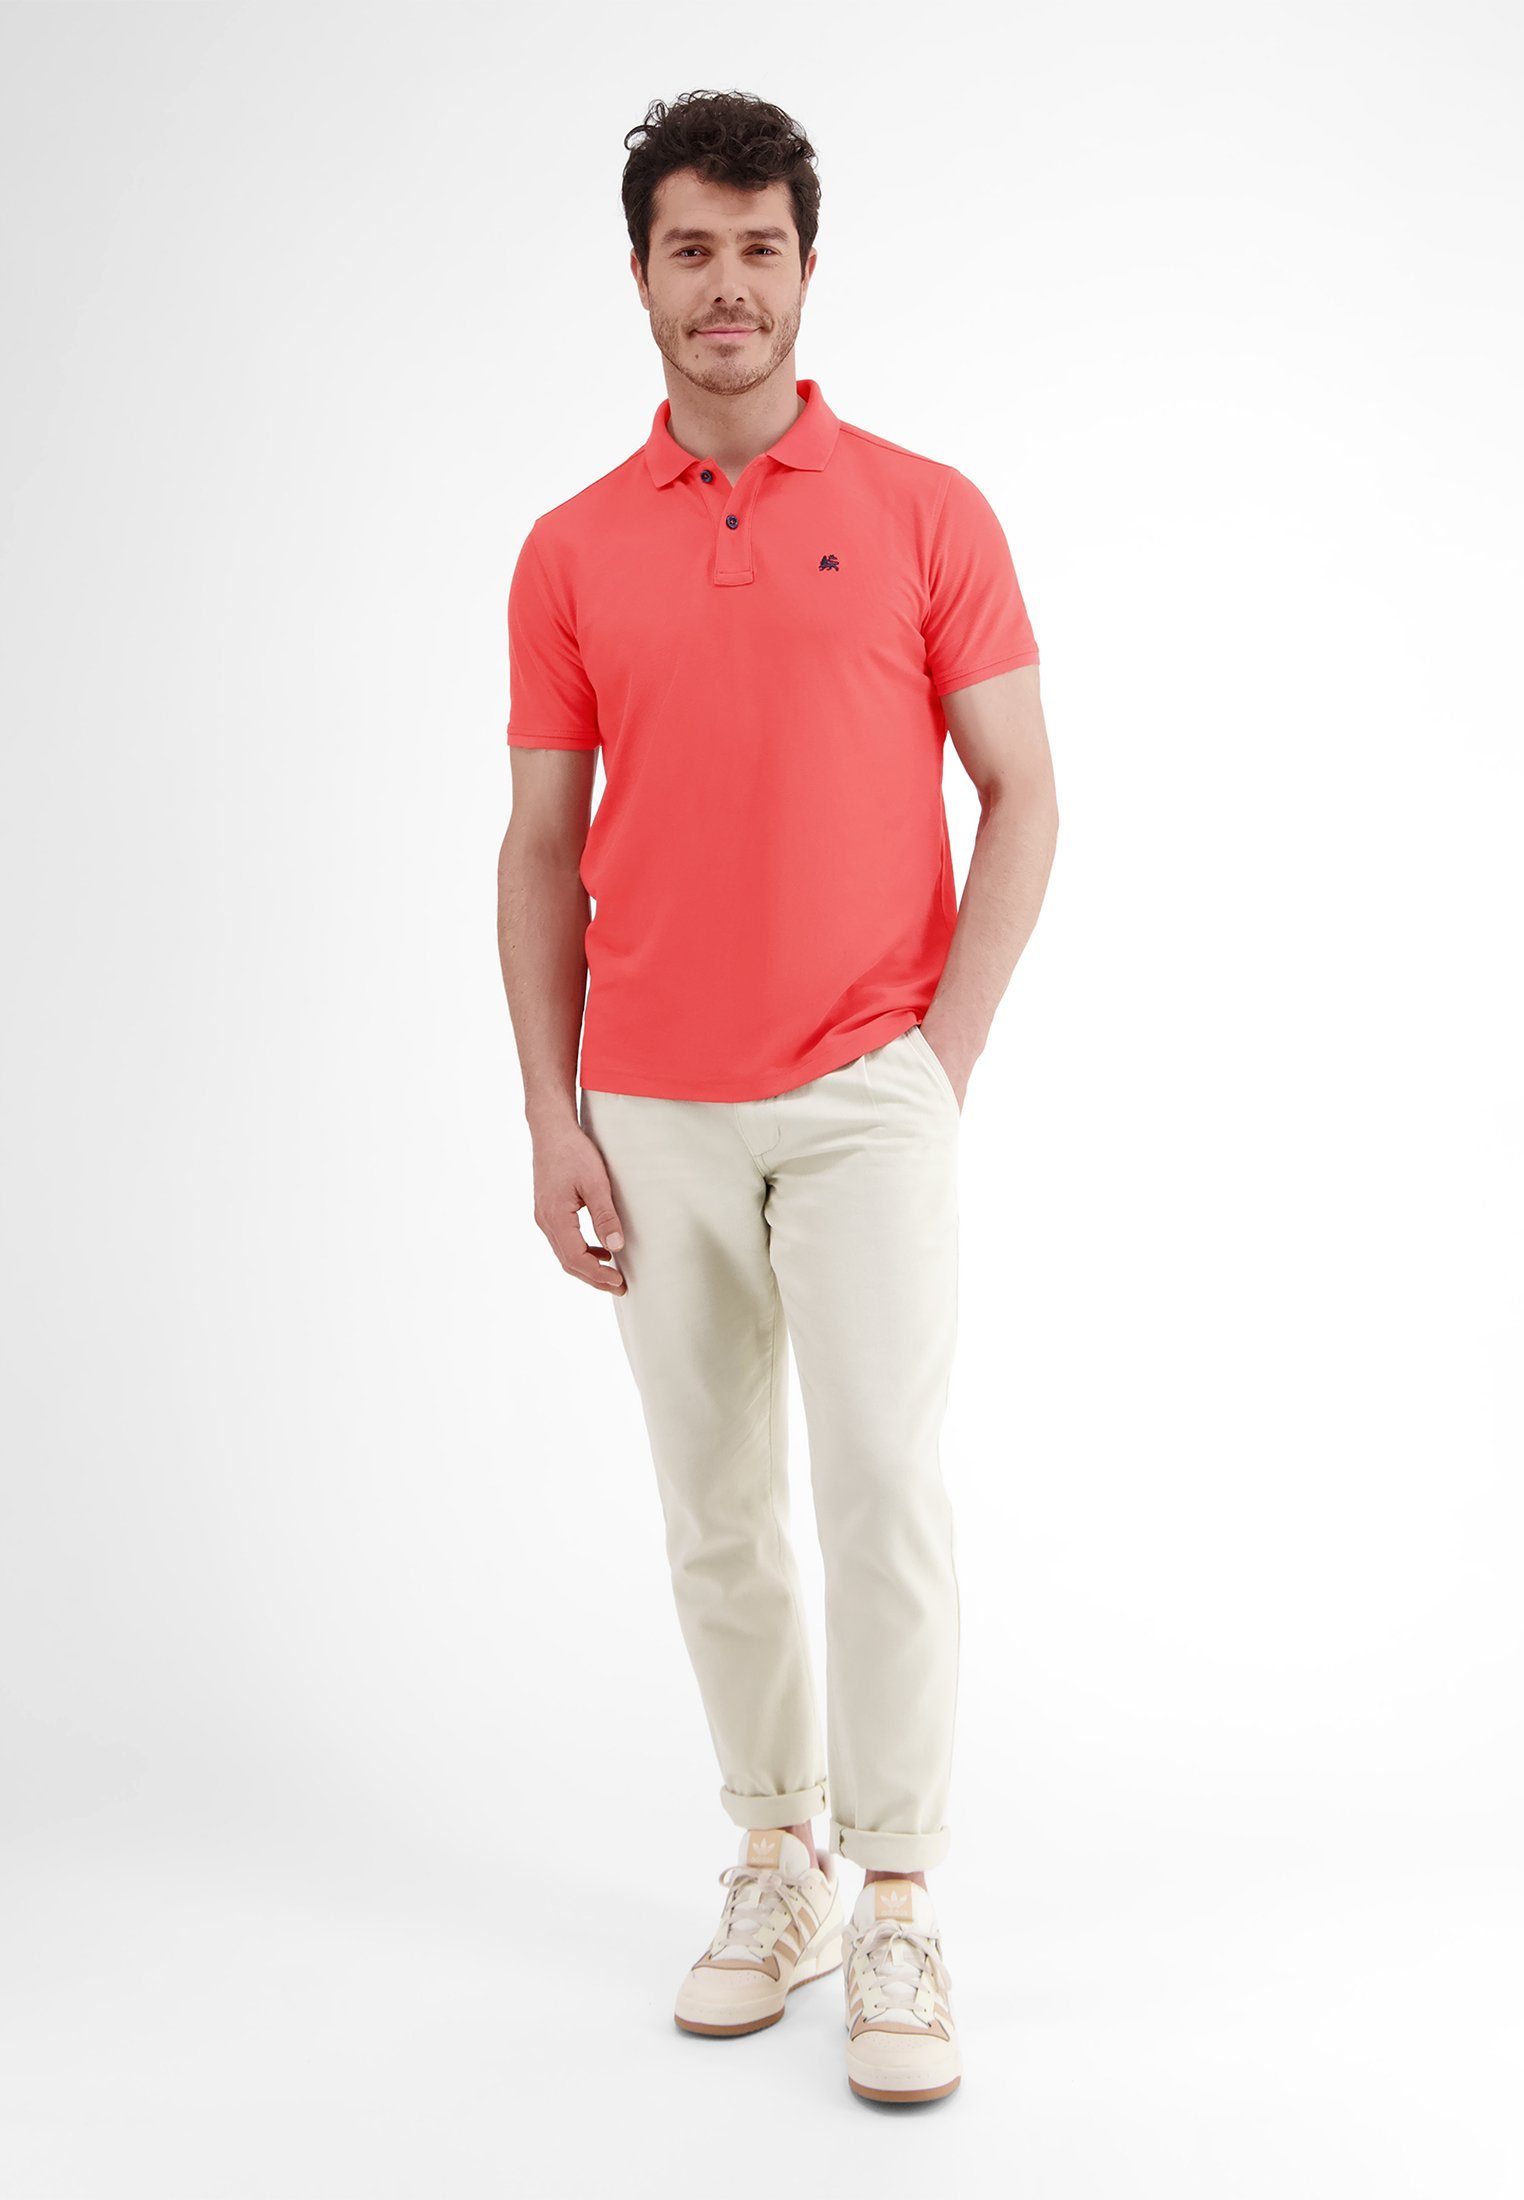 RED Polostyle Dry* Klassischer Piquéqualität in & LERROS HIBISCUS LERROS *Cool Poloshirt